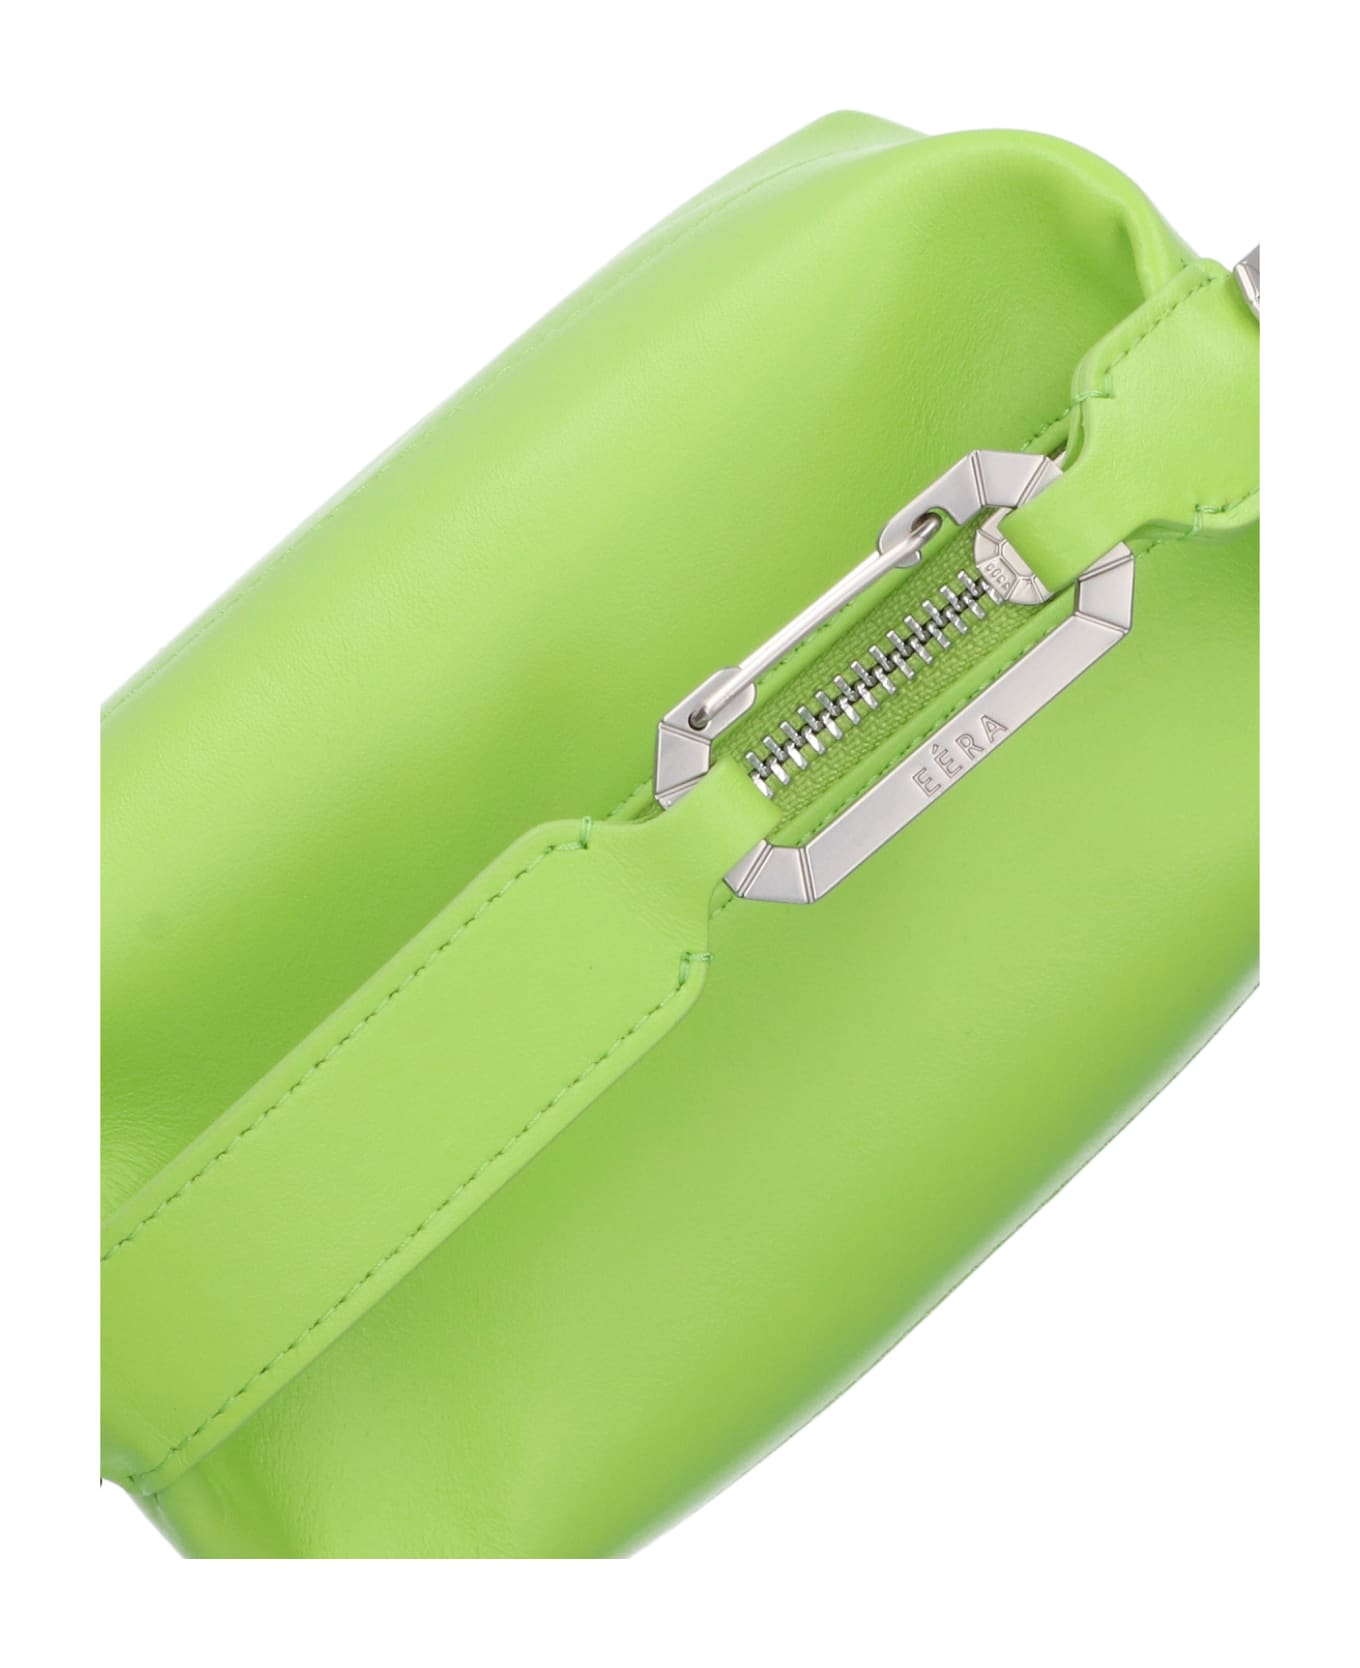 EÉRA 'moon' Handbag - Green ショルダーバッグ